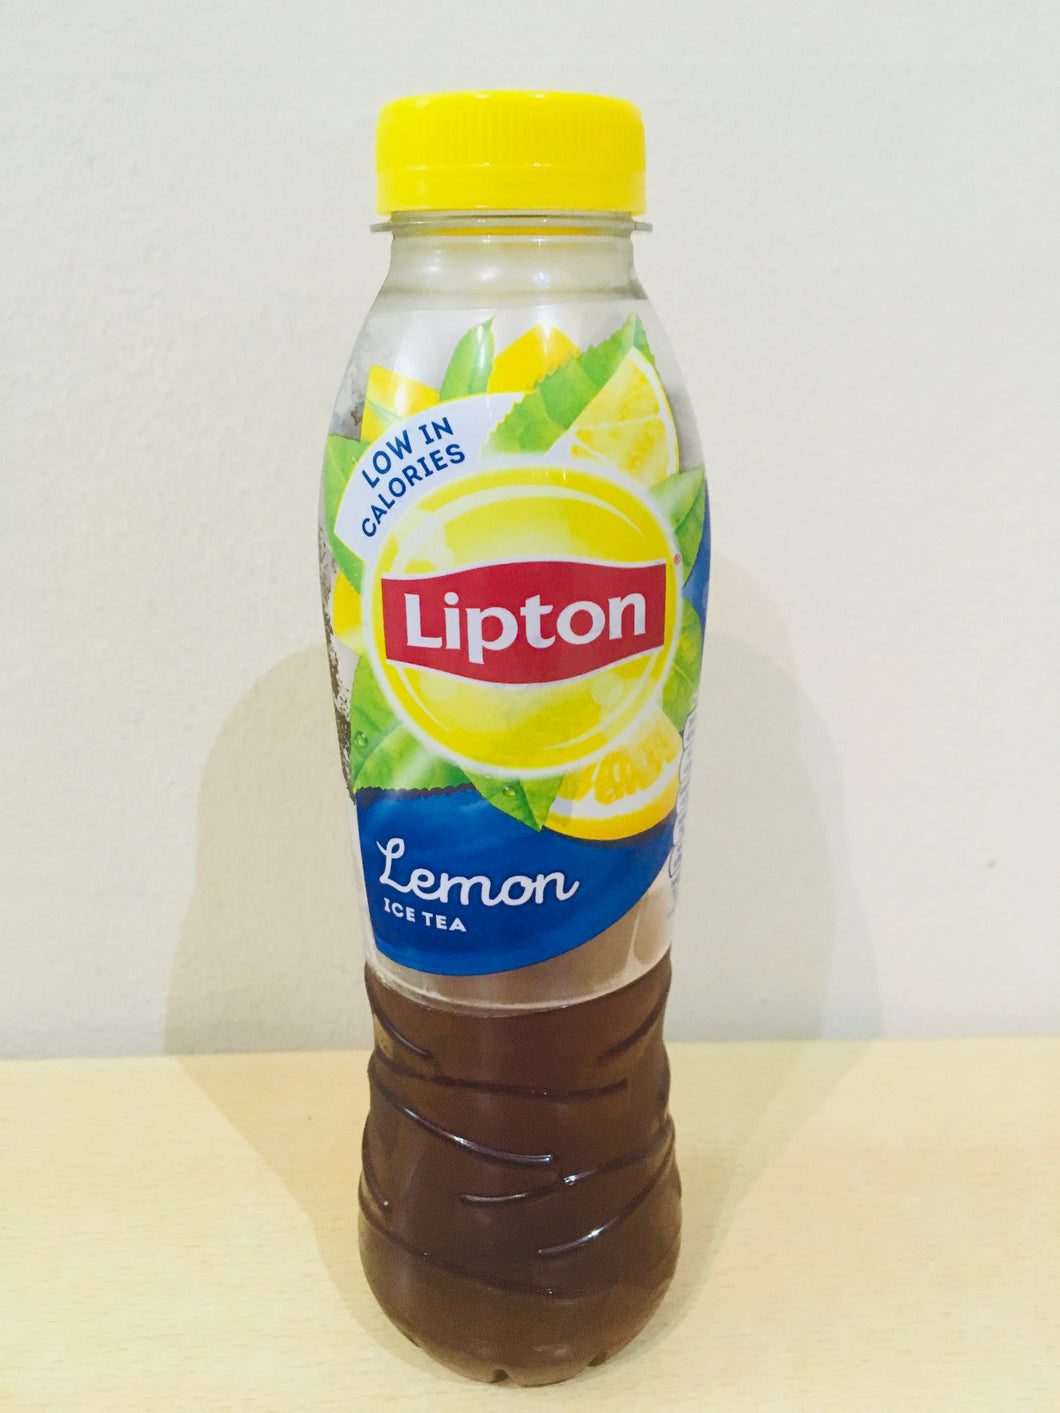 Liptons Ice Tea